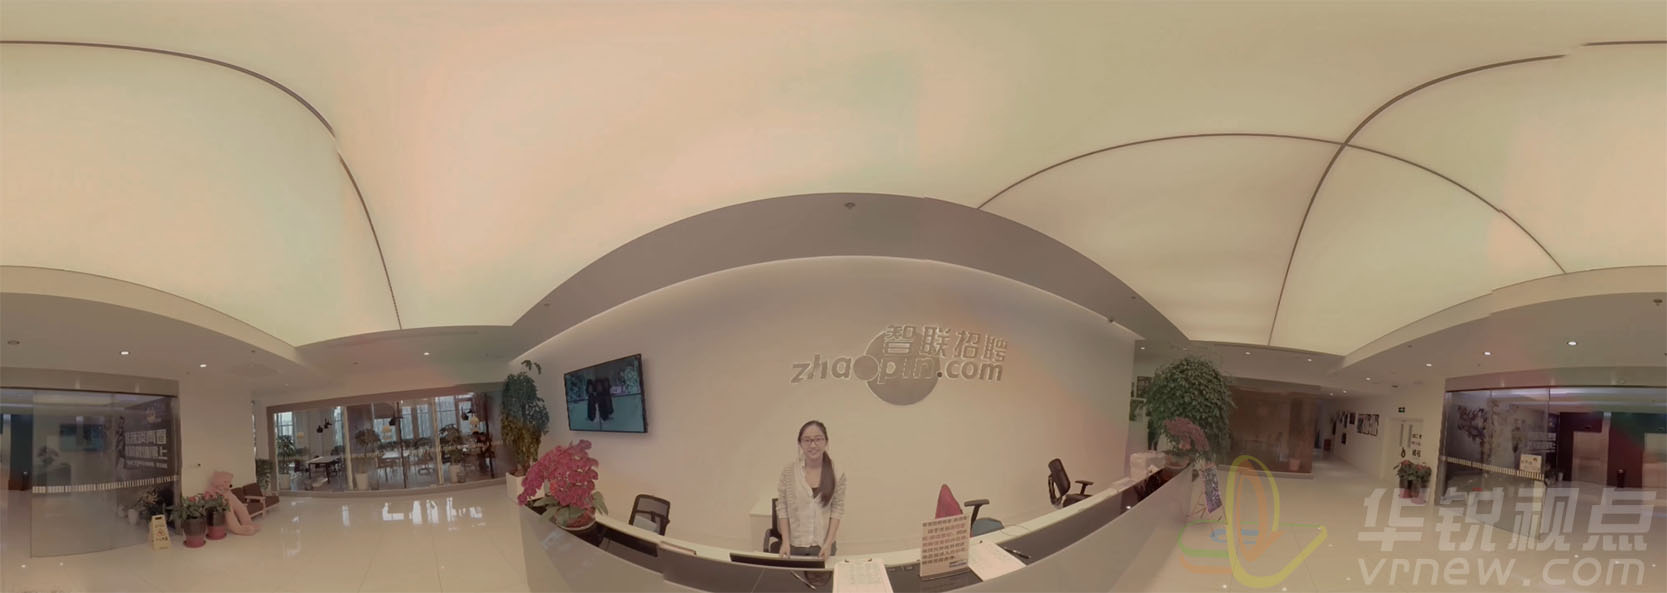 企业宣传VR全景视频，虚拟现实内容制作，北京华锐视点